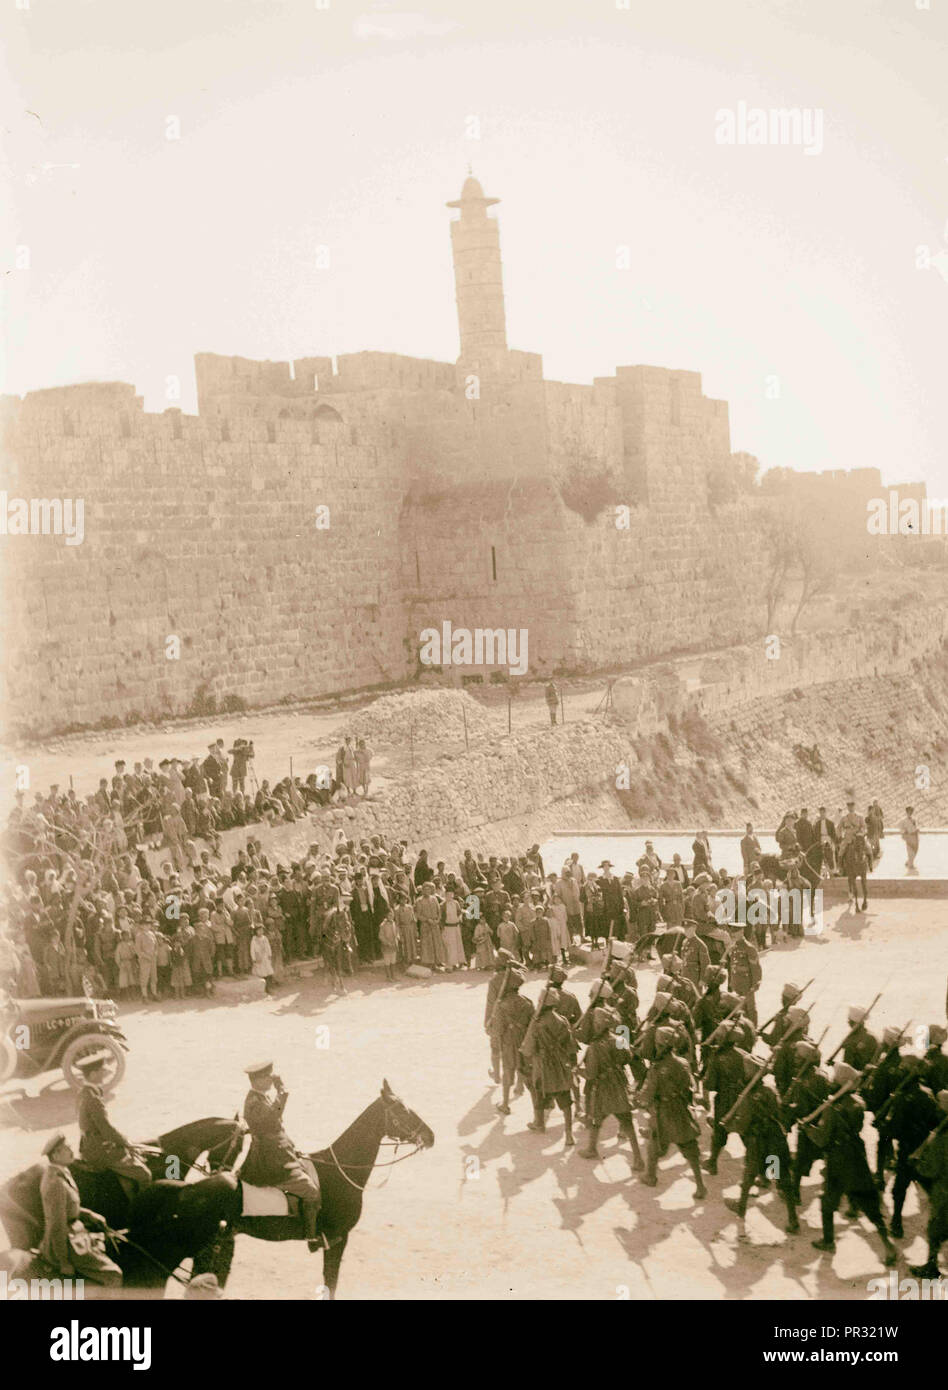 Erfassen und Besetzung Palästinas durch die Briten. Britische Truppen auf Parade am Jaffa-tor. 1917, Jerusalem Stockfoto